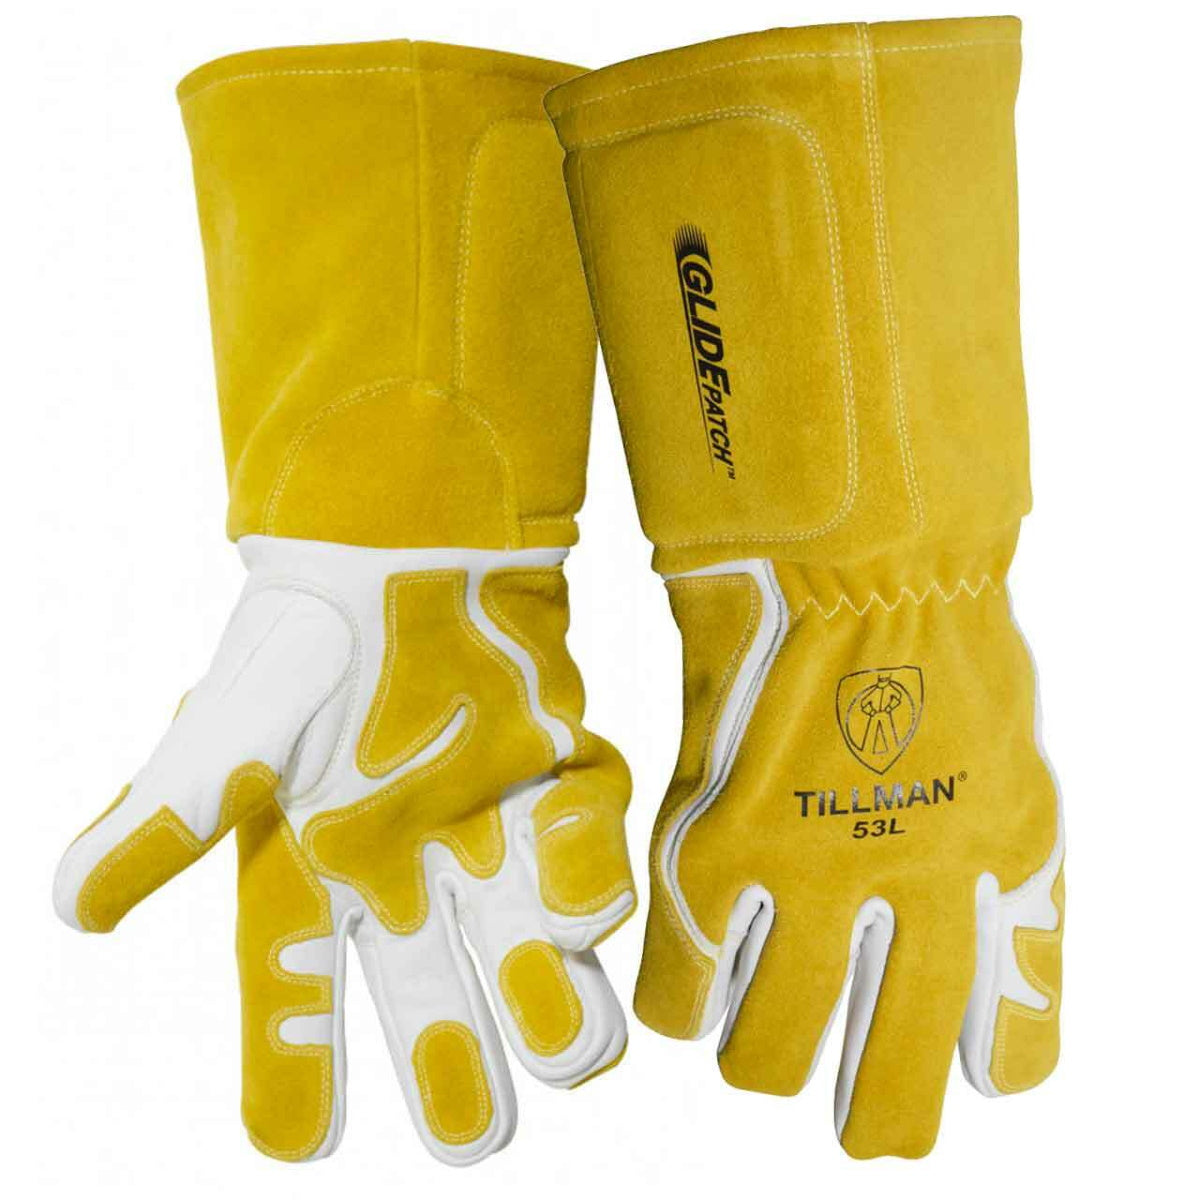 Tillman 53 Premium MIG Gloves with GlidePatch